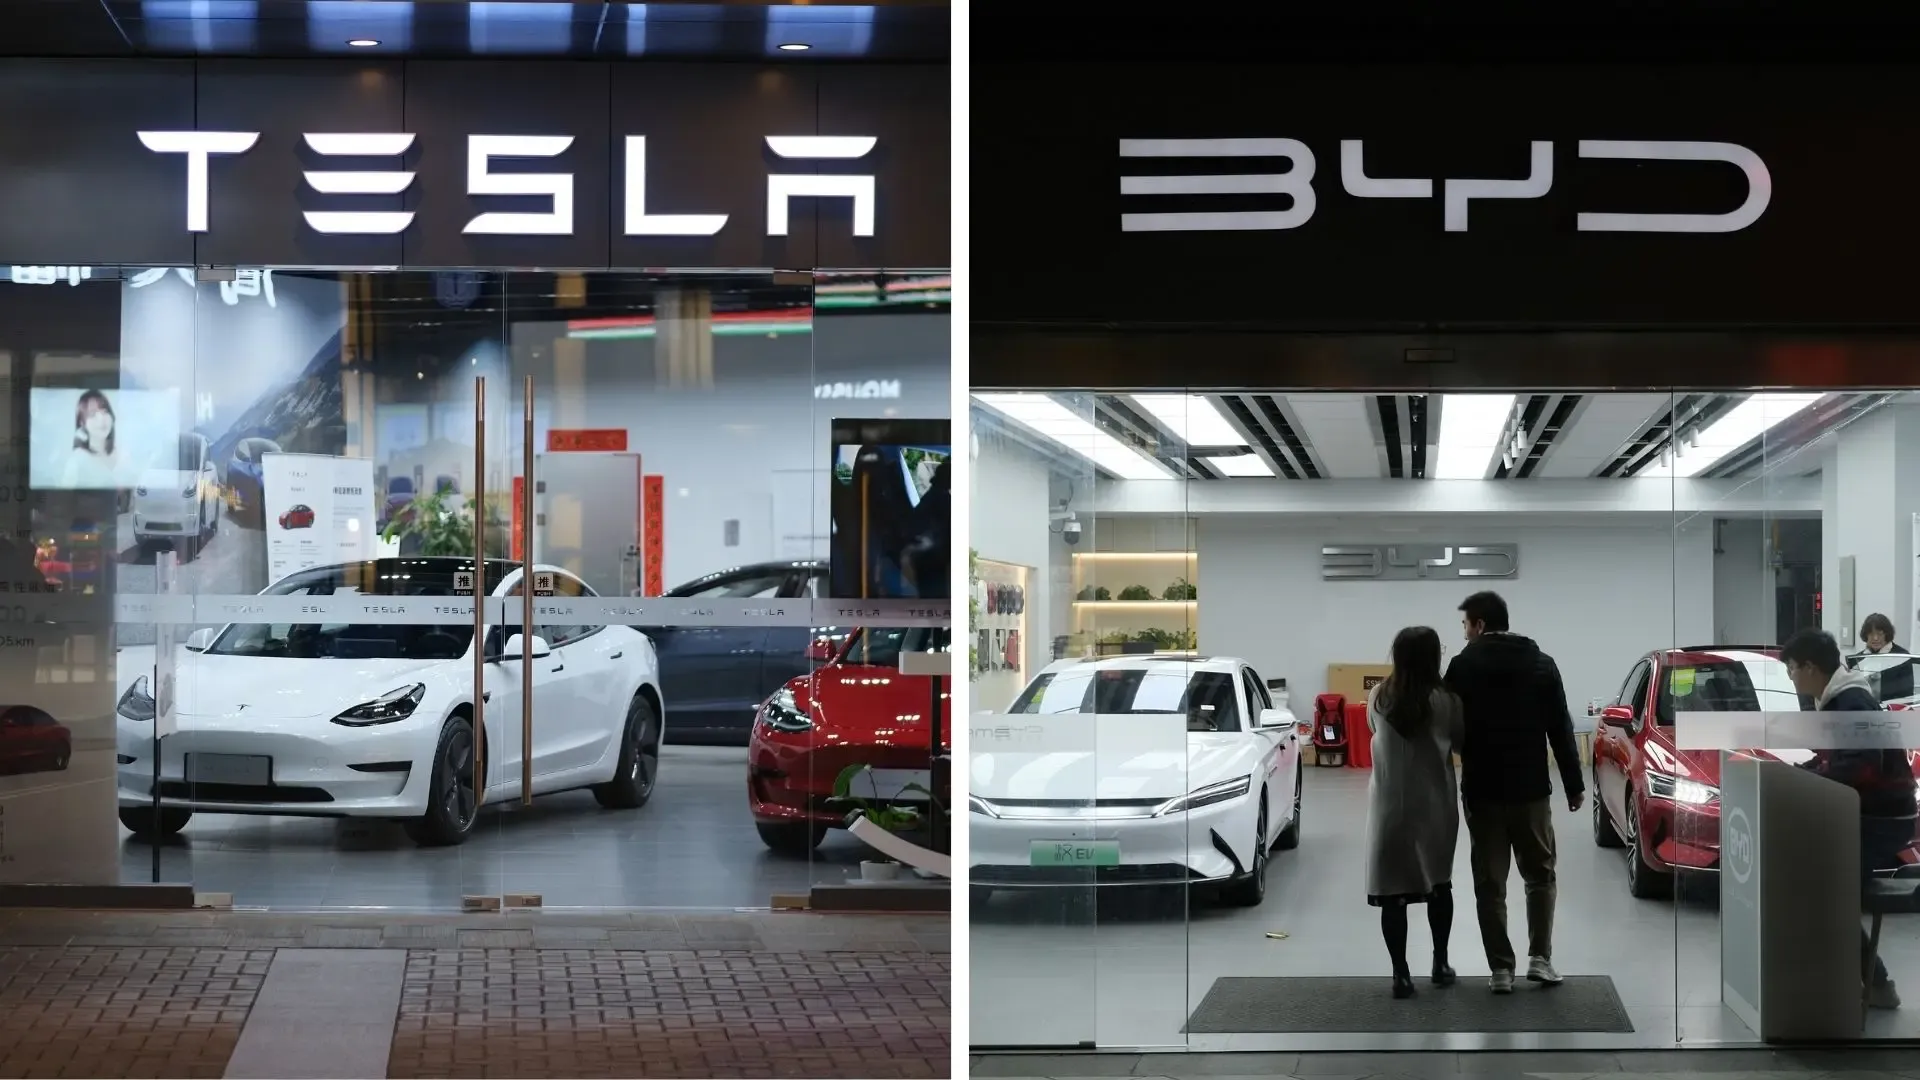 
											
											“Tesla” elektromobillari “BYD” dan oshdi
											
											